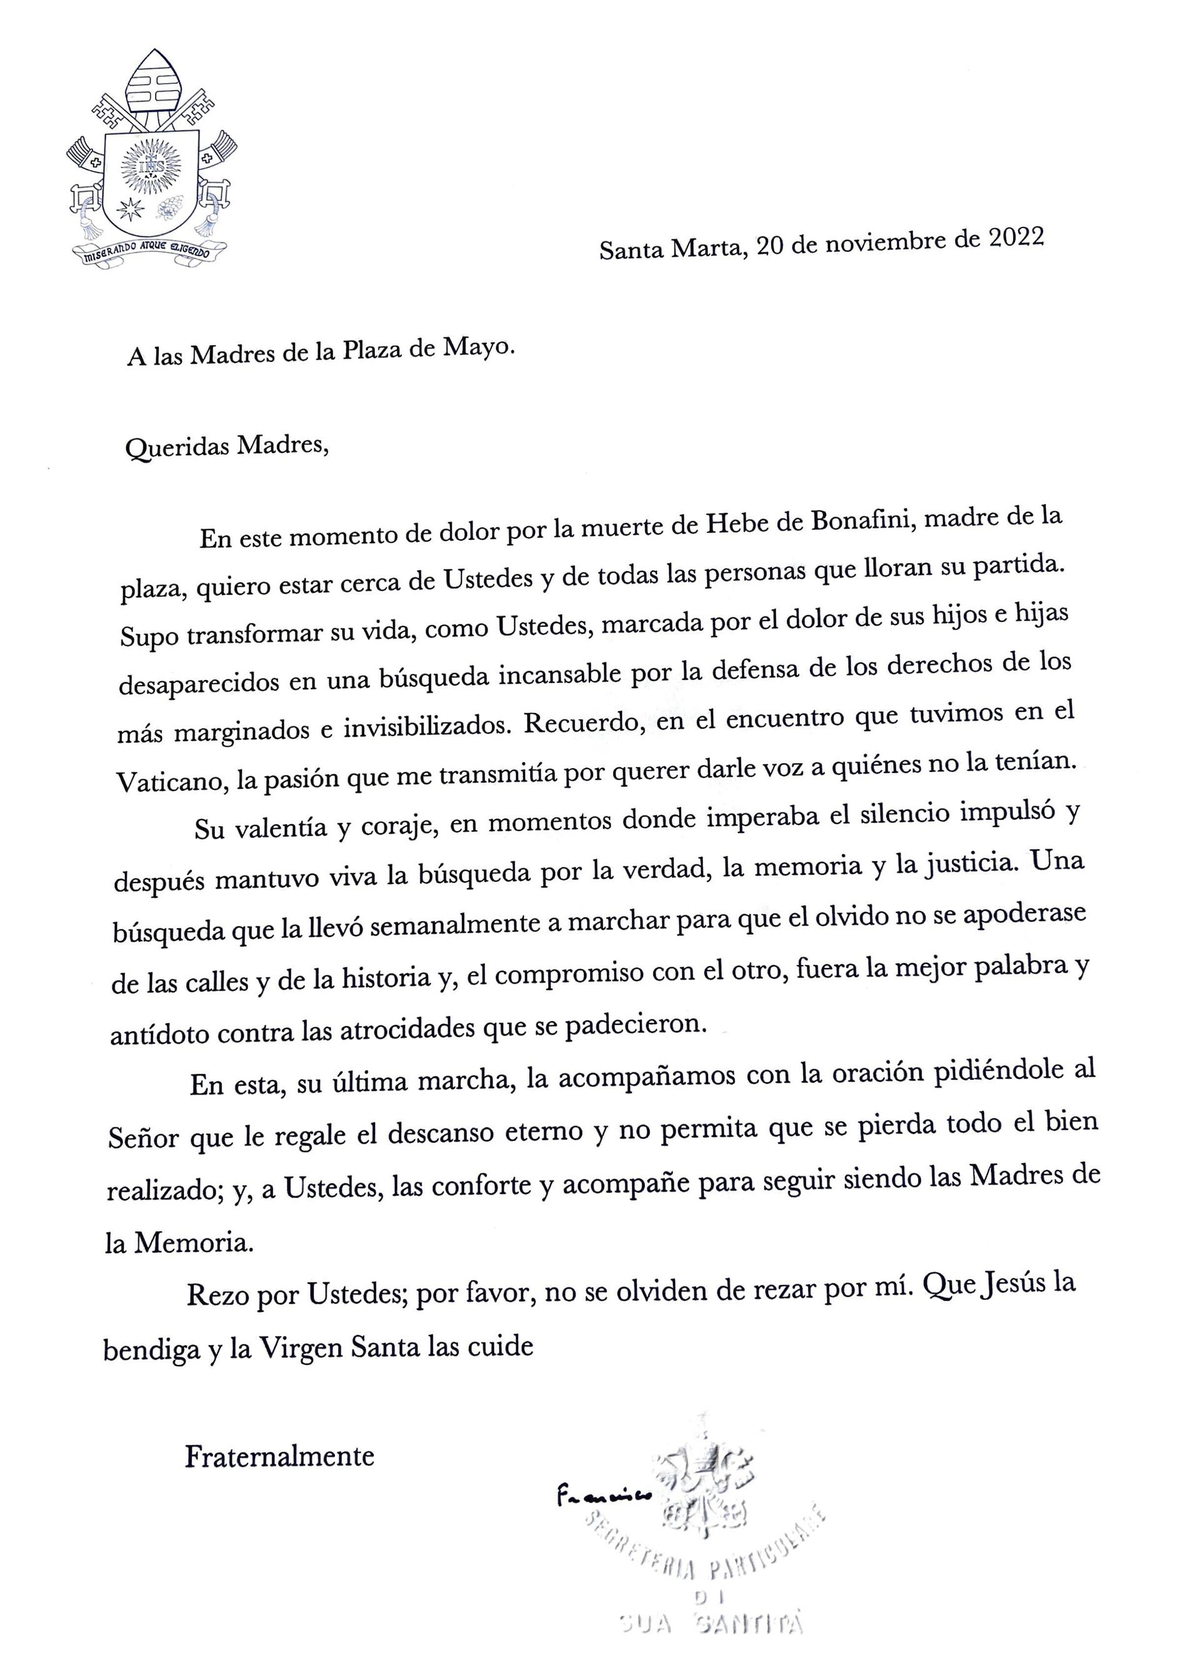 La carta del Papa a las Madres de Plaza de Mayo, tras la muerte de Hebe Bonafini.&nbsp;